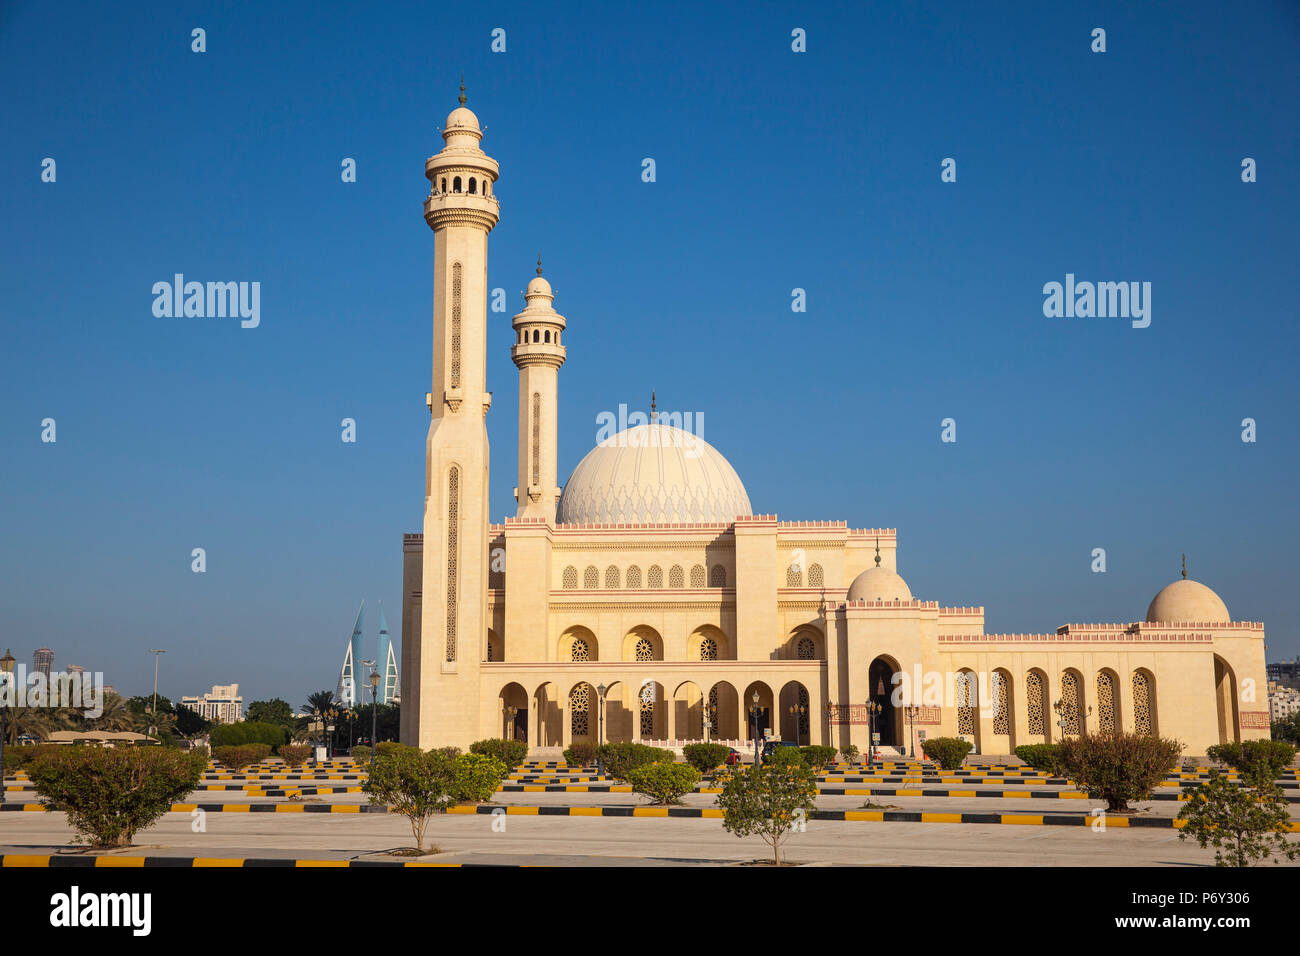 Bahrain, Manama, Juffair, Al Fateh Moschee - die Große Moschee Stockfoto